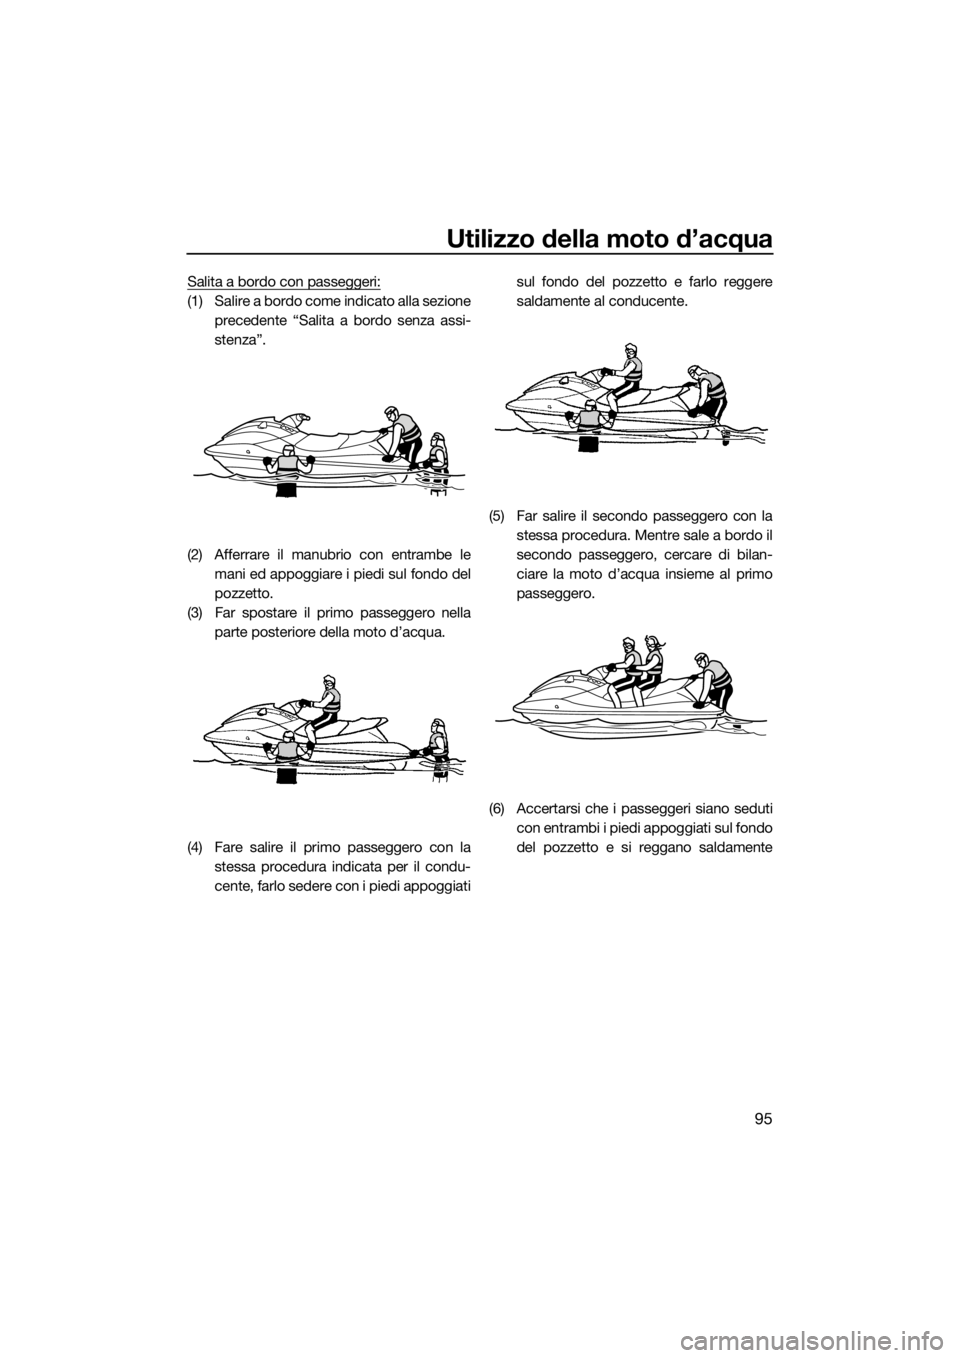 YAMAHA VX 2021  Manuale duso (in Italian) Utilizzo della moto d’acqua
95
Salita a bordo con passeggeri:
(1) Salire a bordo come indicato alla sezioneprecedente “Salita a bordo senza assi-
stenza”.
(2) Afferrare il manubrio con entrambe 